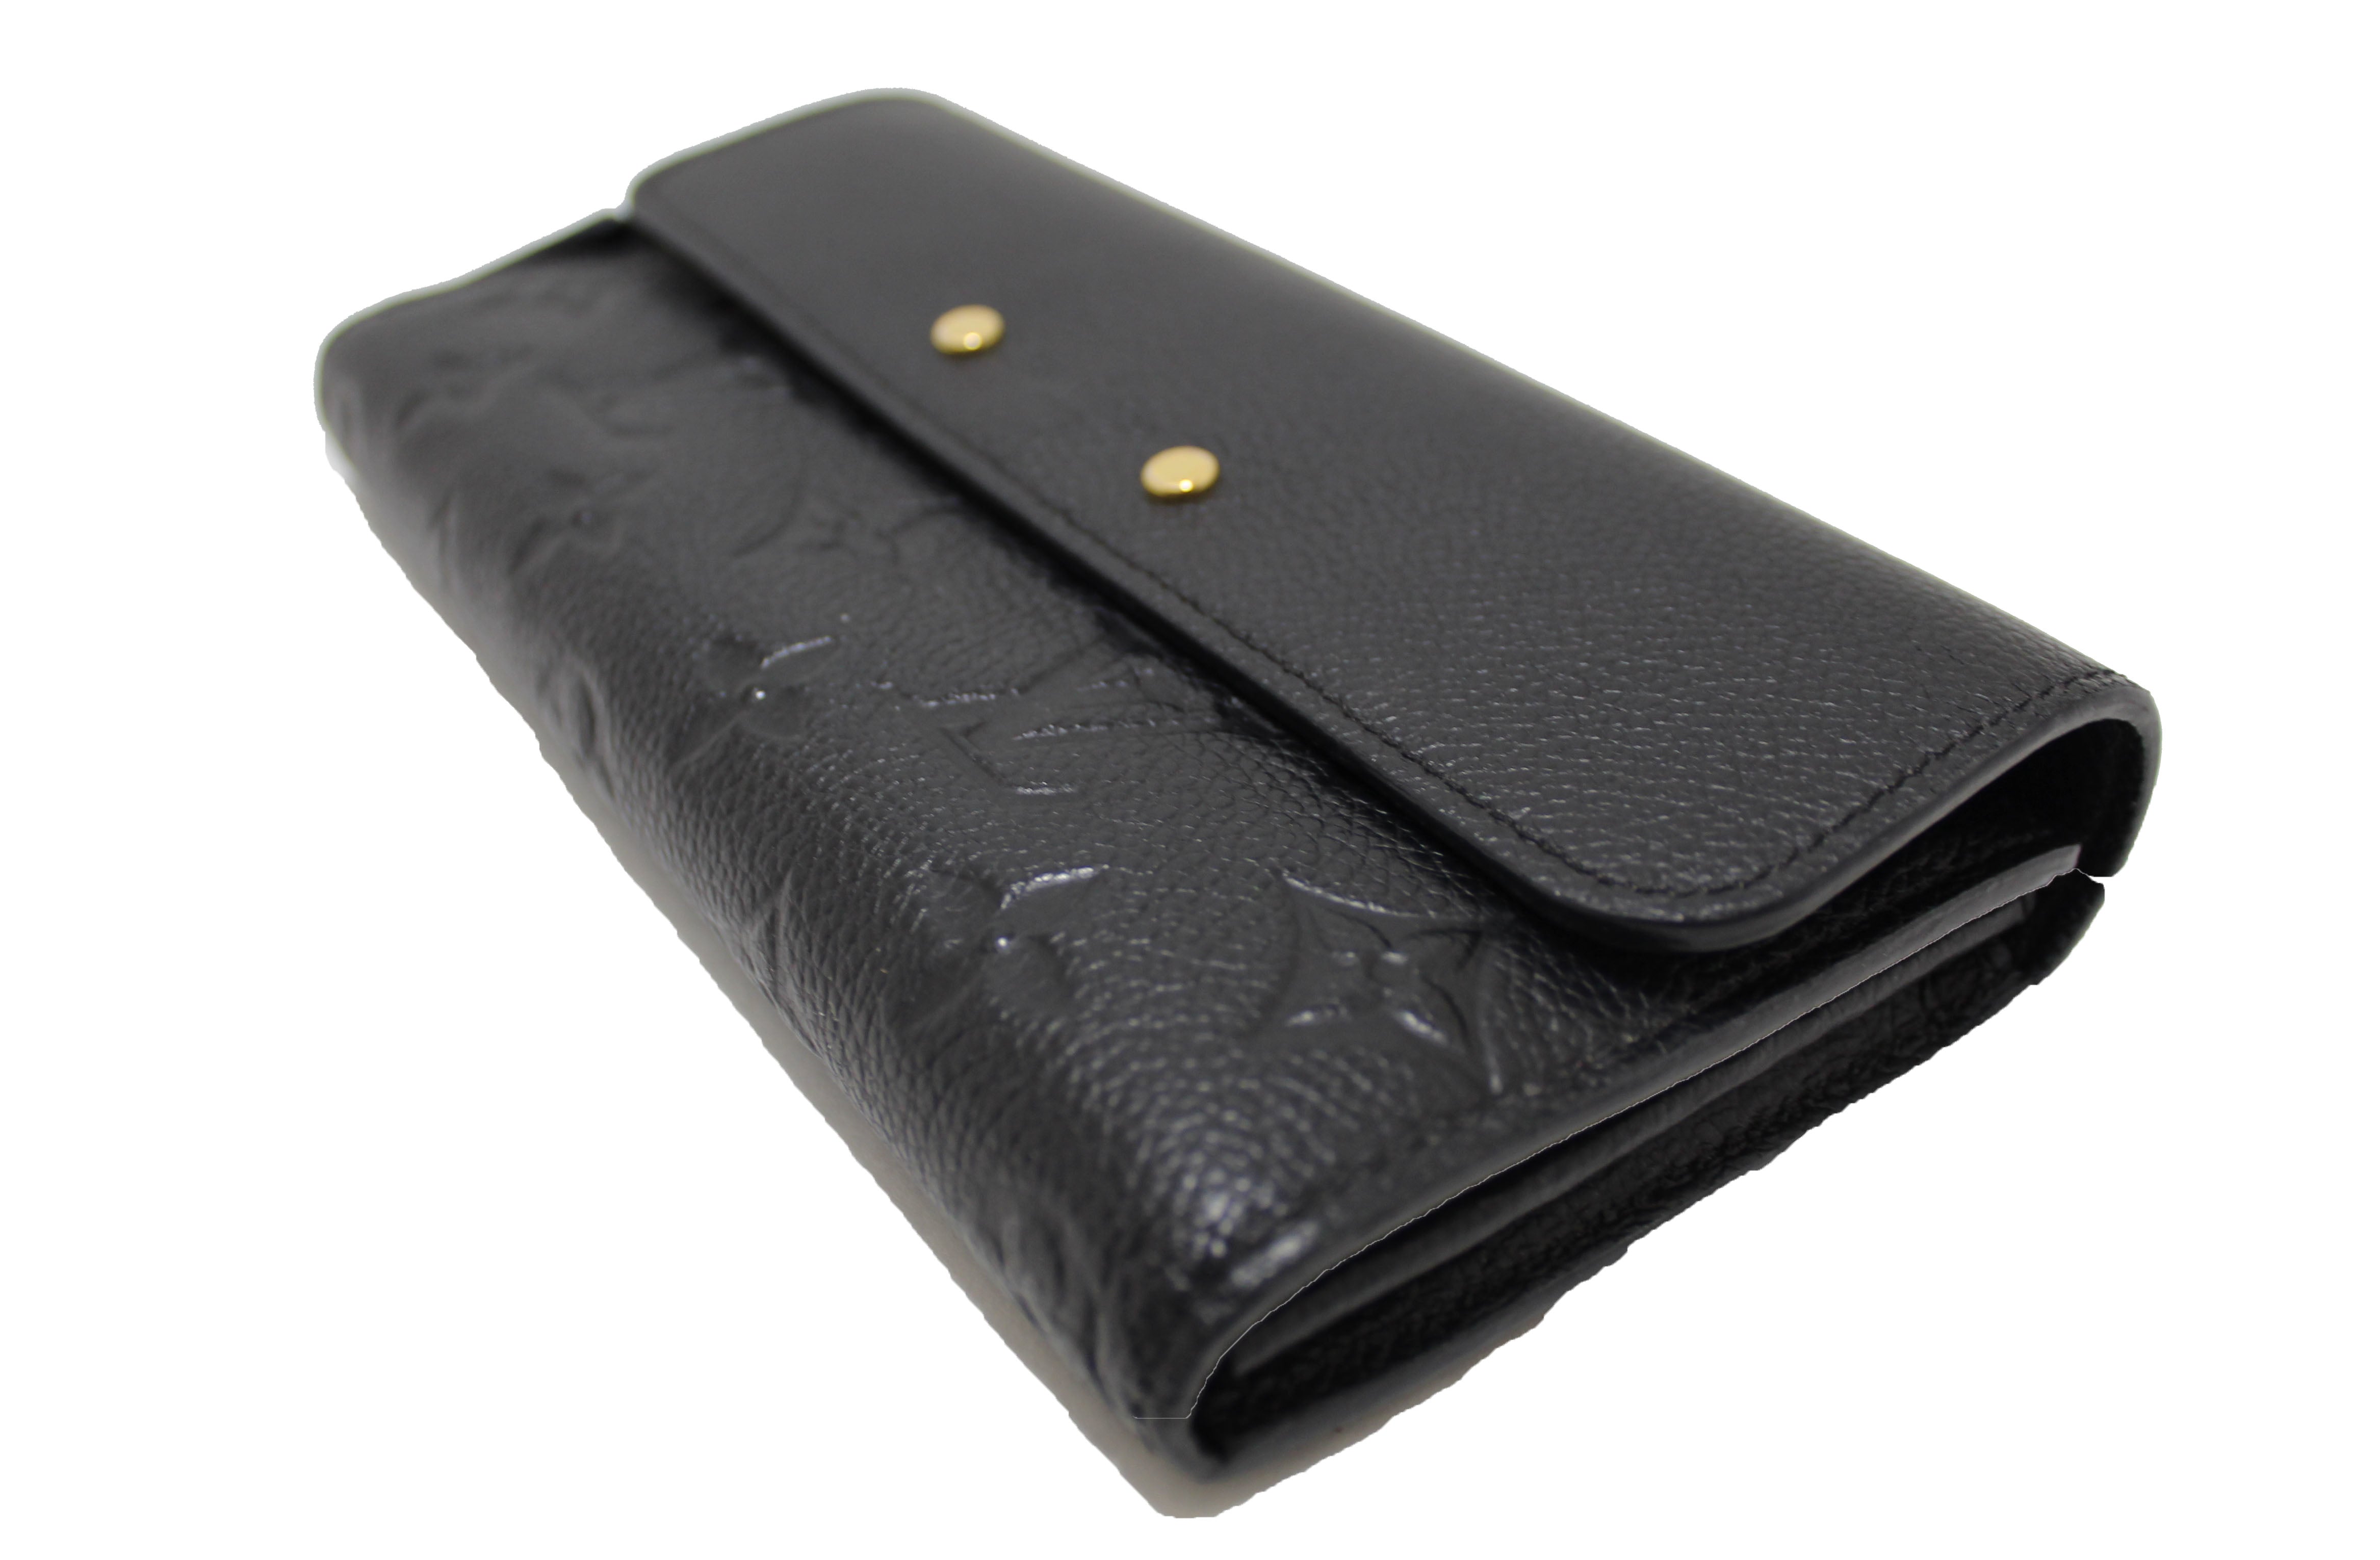 Louis Vuitton Black Monogram Empreinte Leather Pont Neuf Wallet